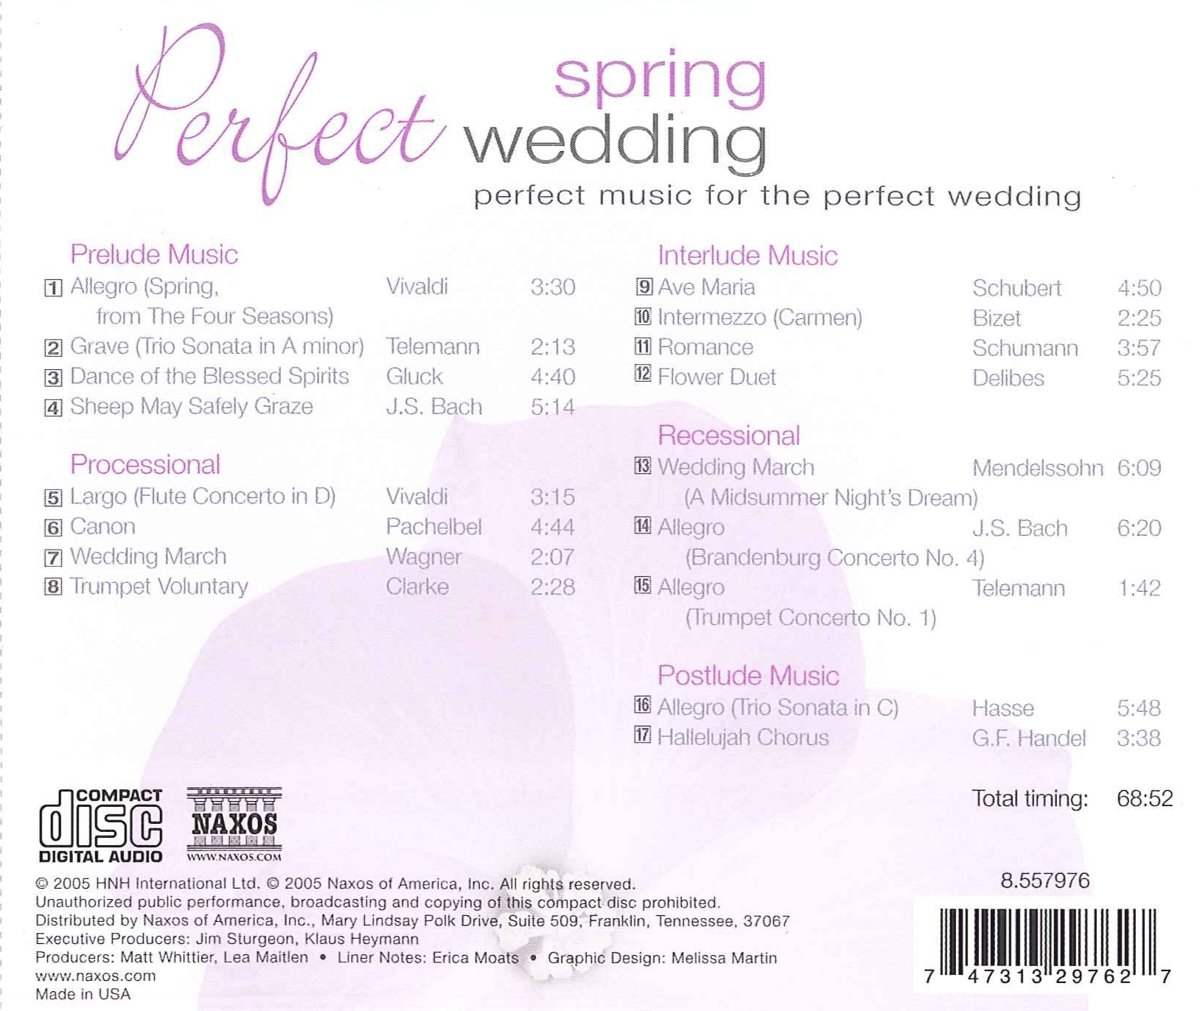 퍼펙트 스프링 웨딩 (Perfect Spring Wedding) 